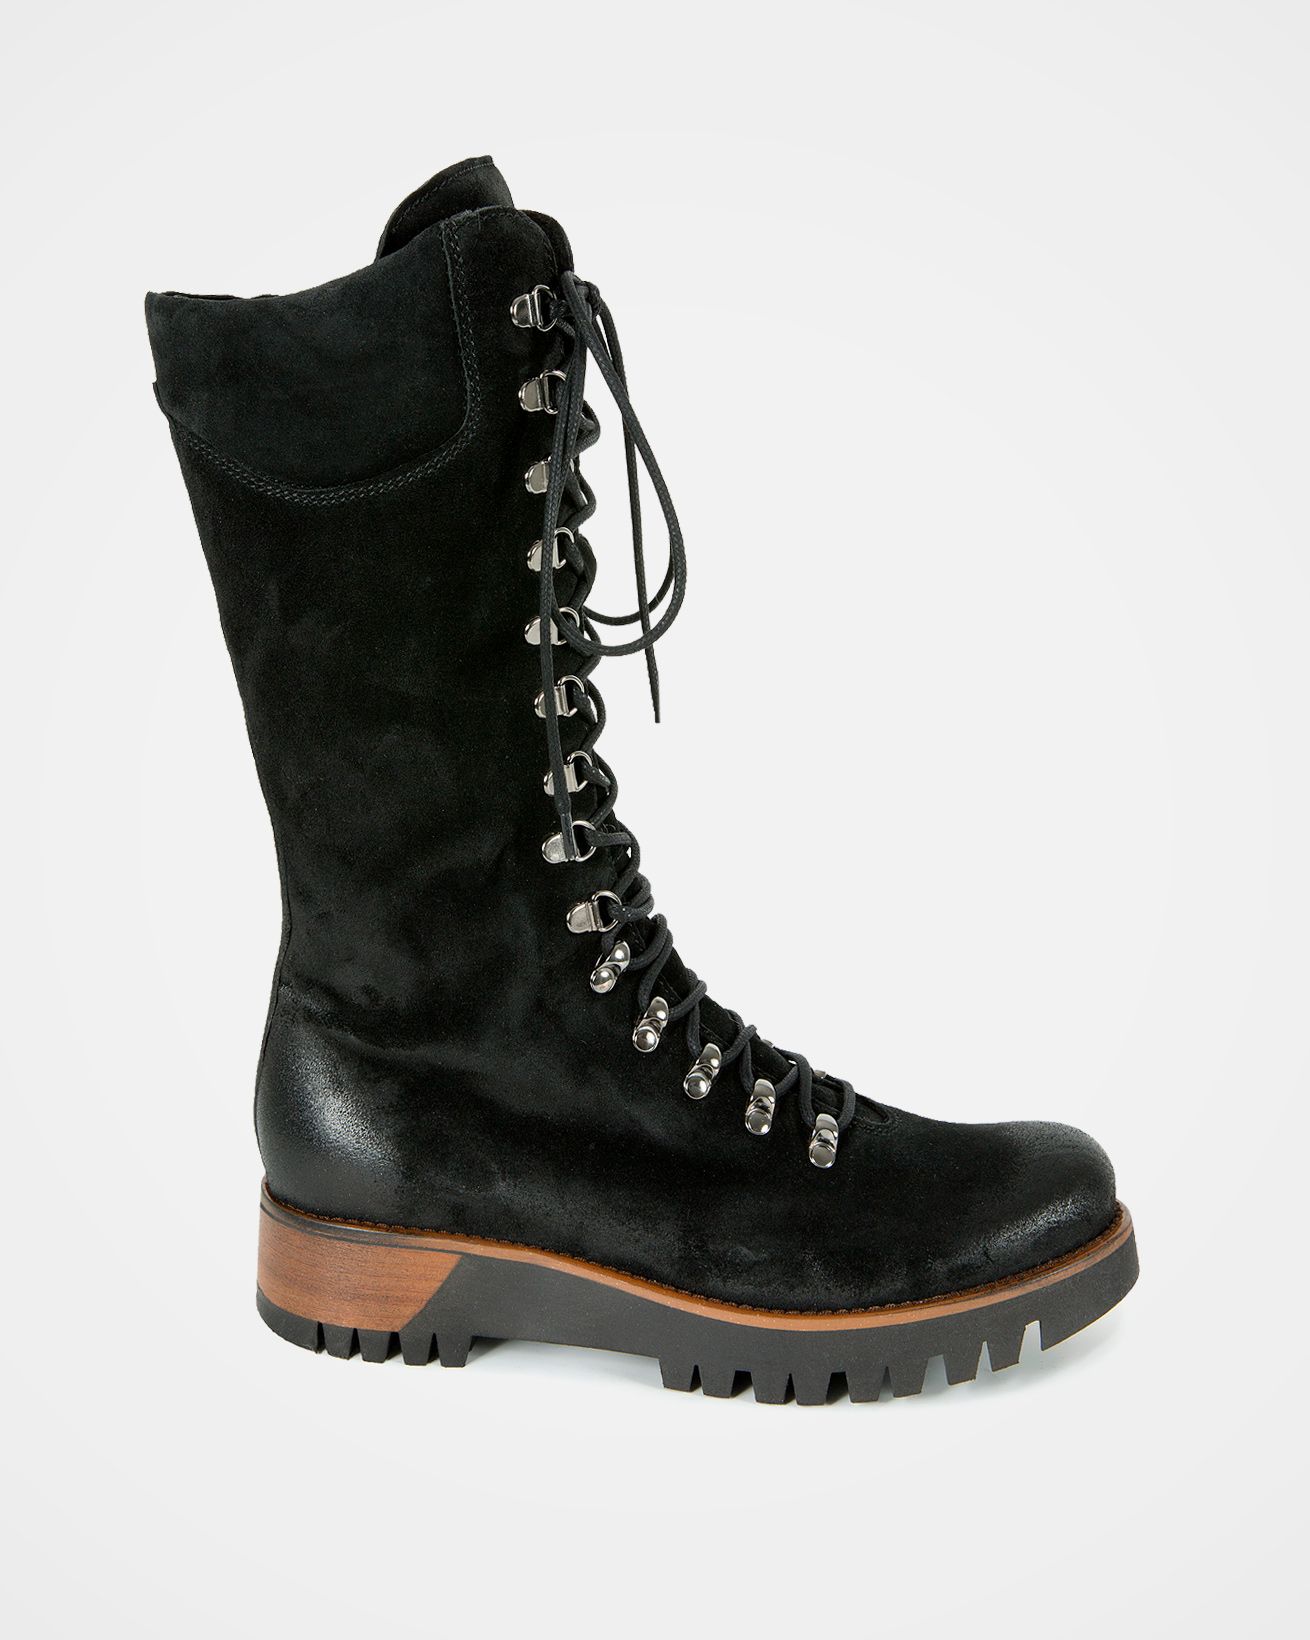 7082-wilderness-boots-black-outside-web-lfs-rev.jpg